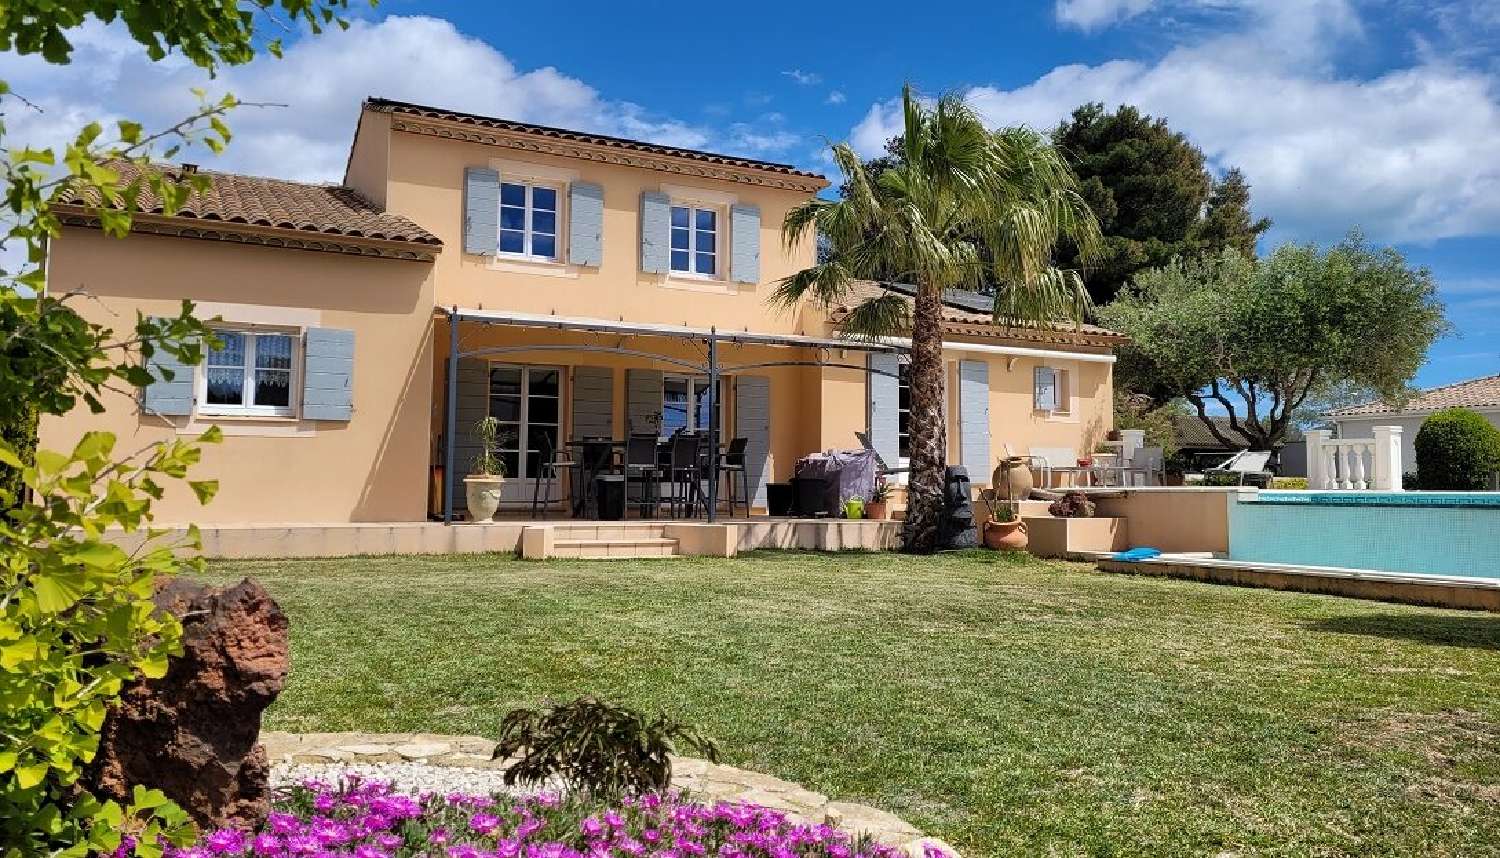  à vendre maison indépendant Béziers Hérault 1